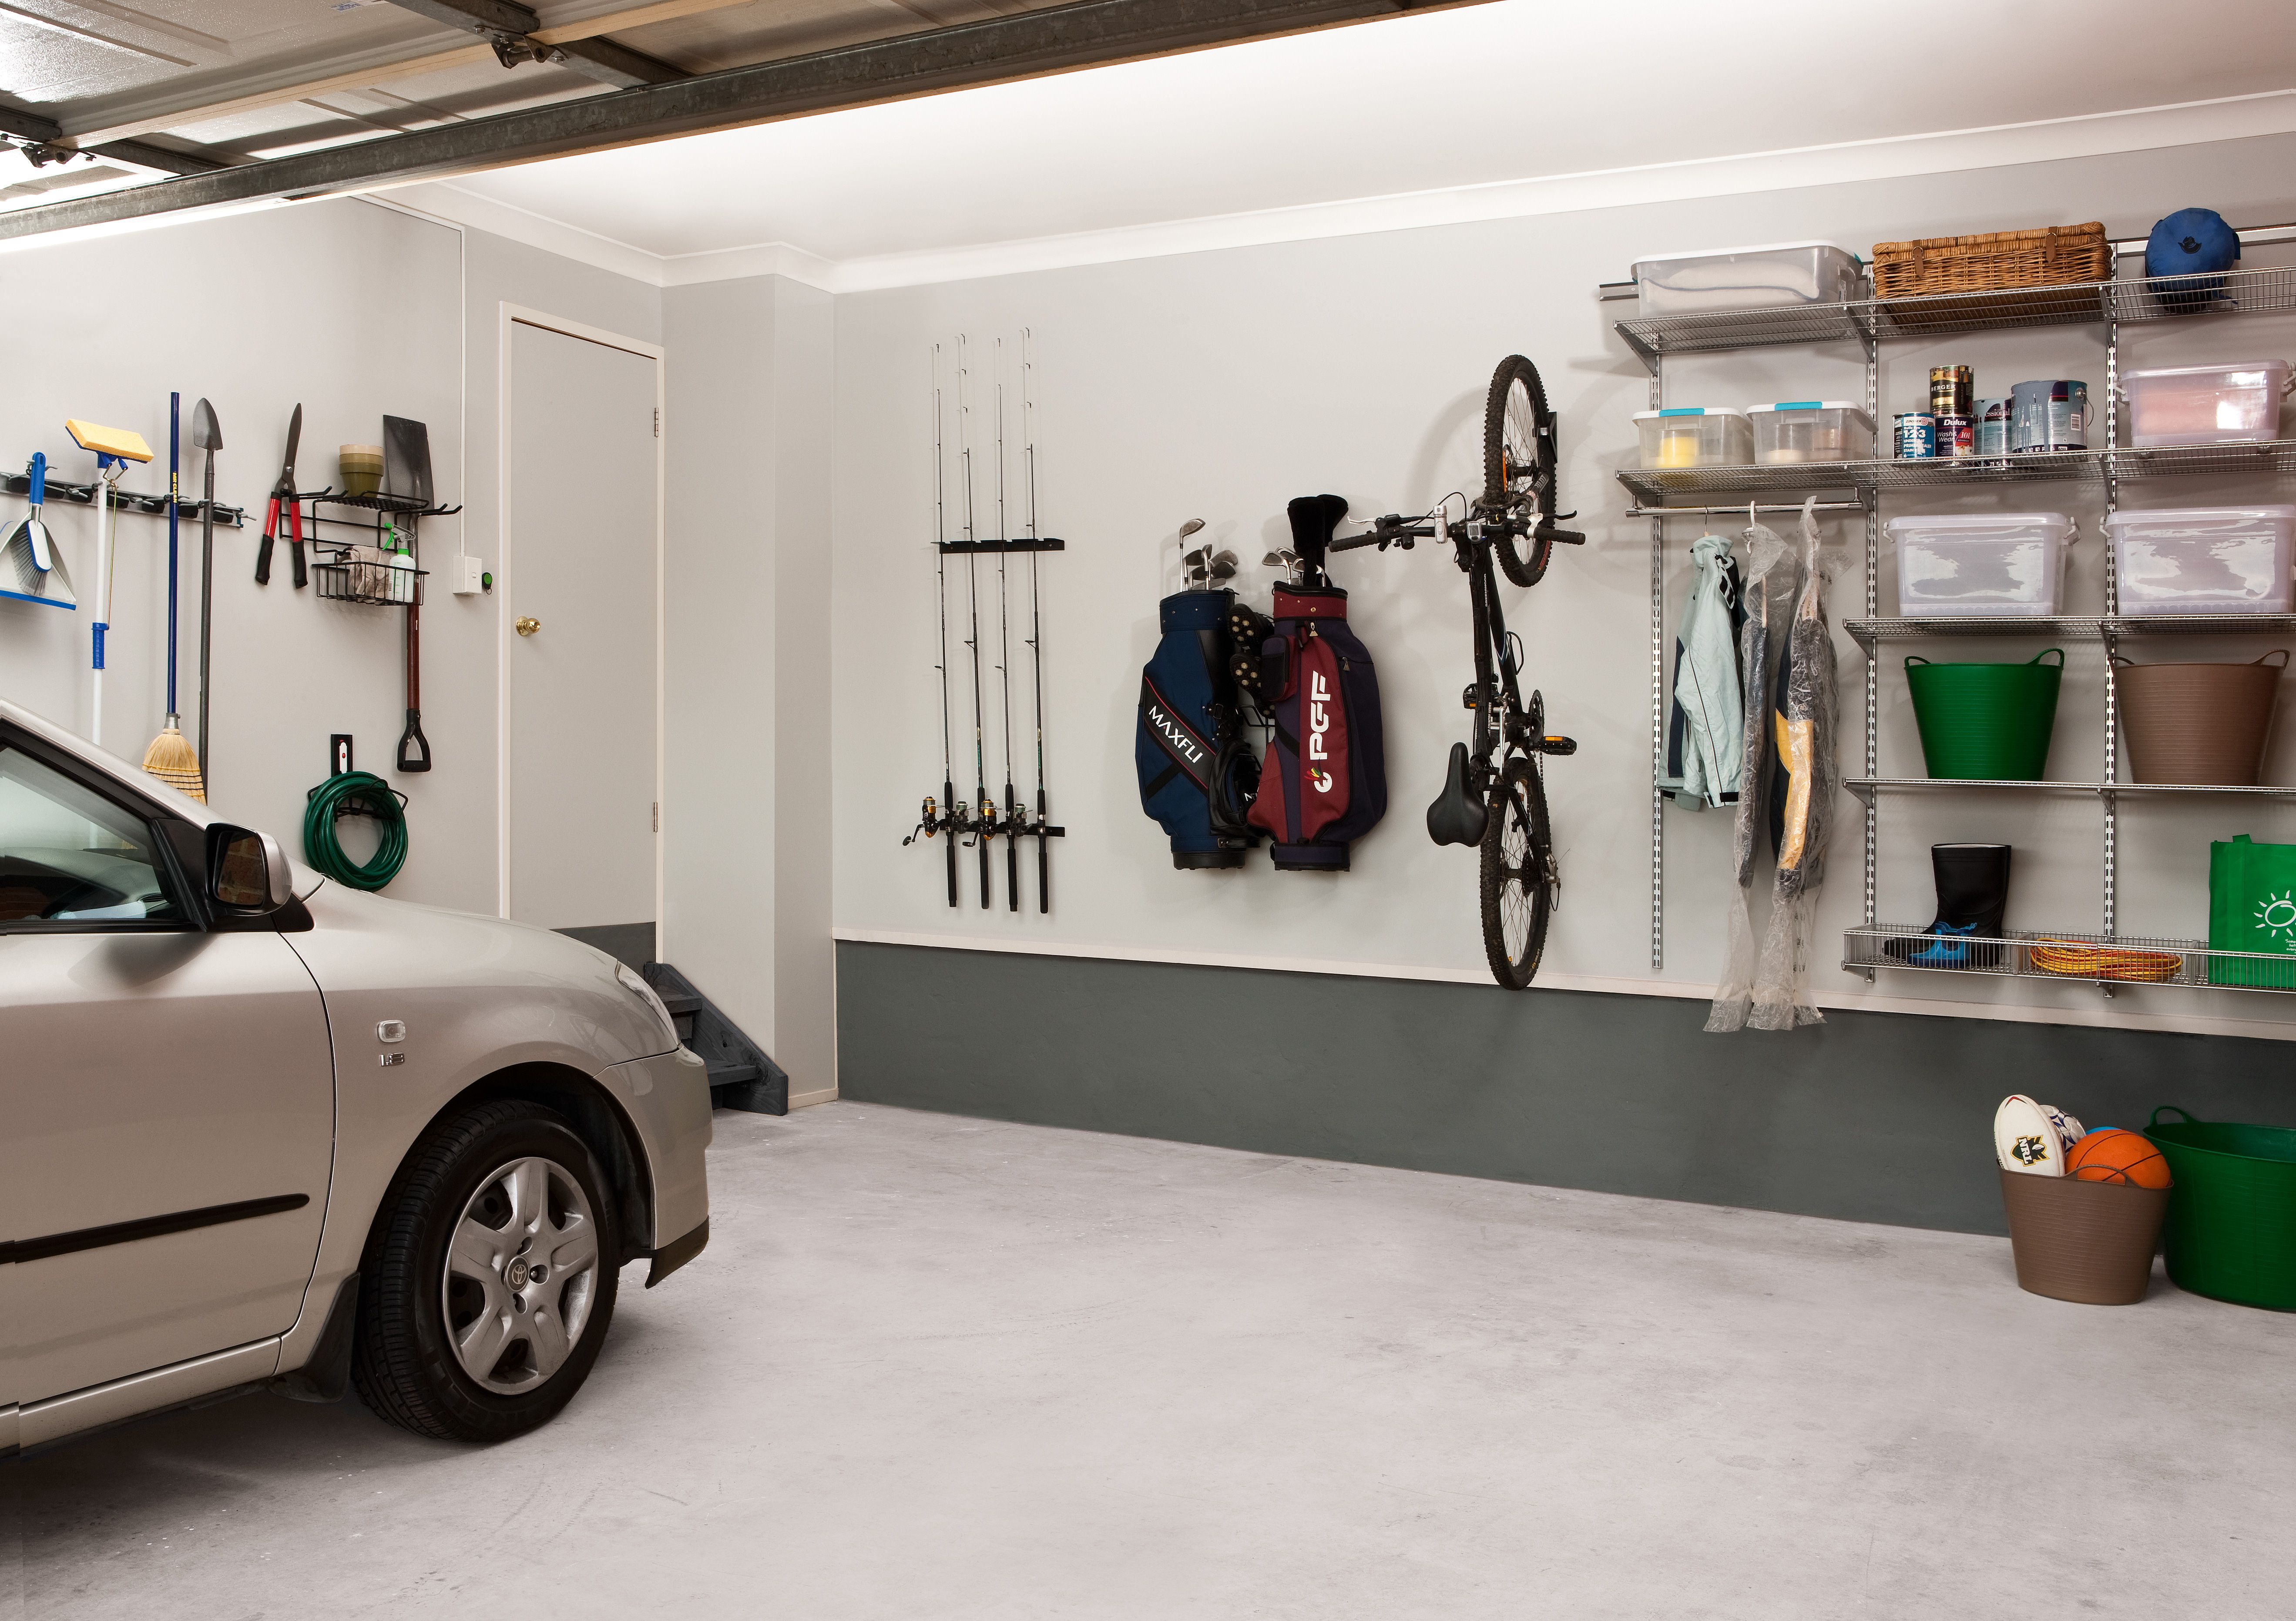 Хранение машины в гараже плюсы и минусы: Плюсы и минусы хранения машины в гараже